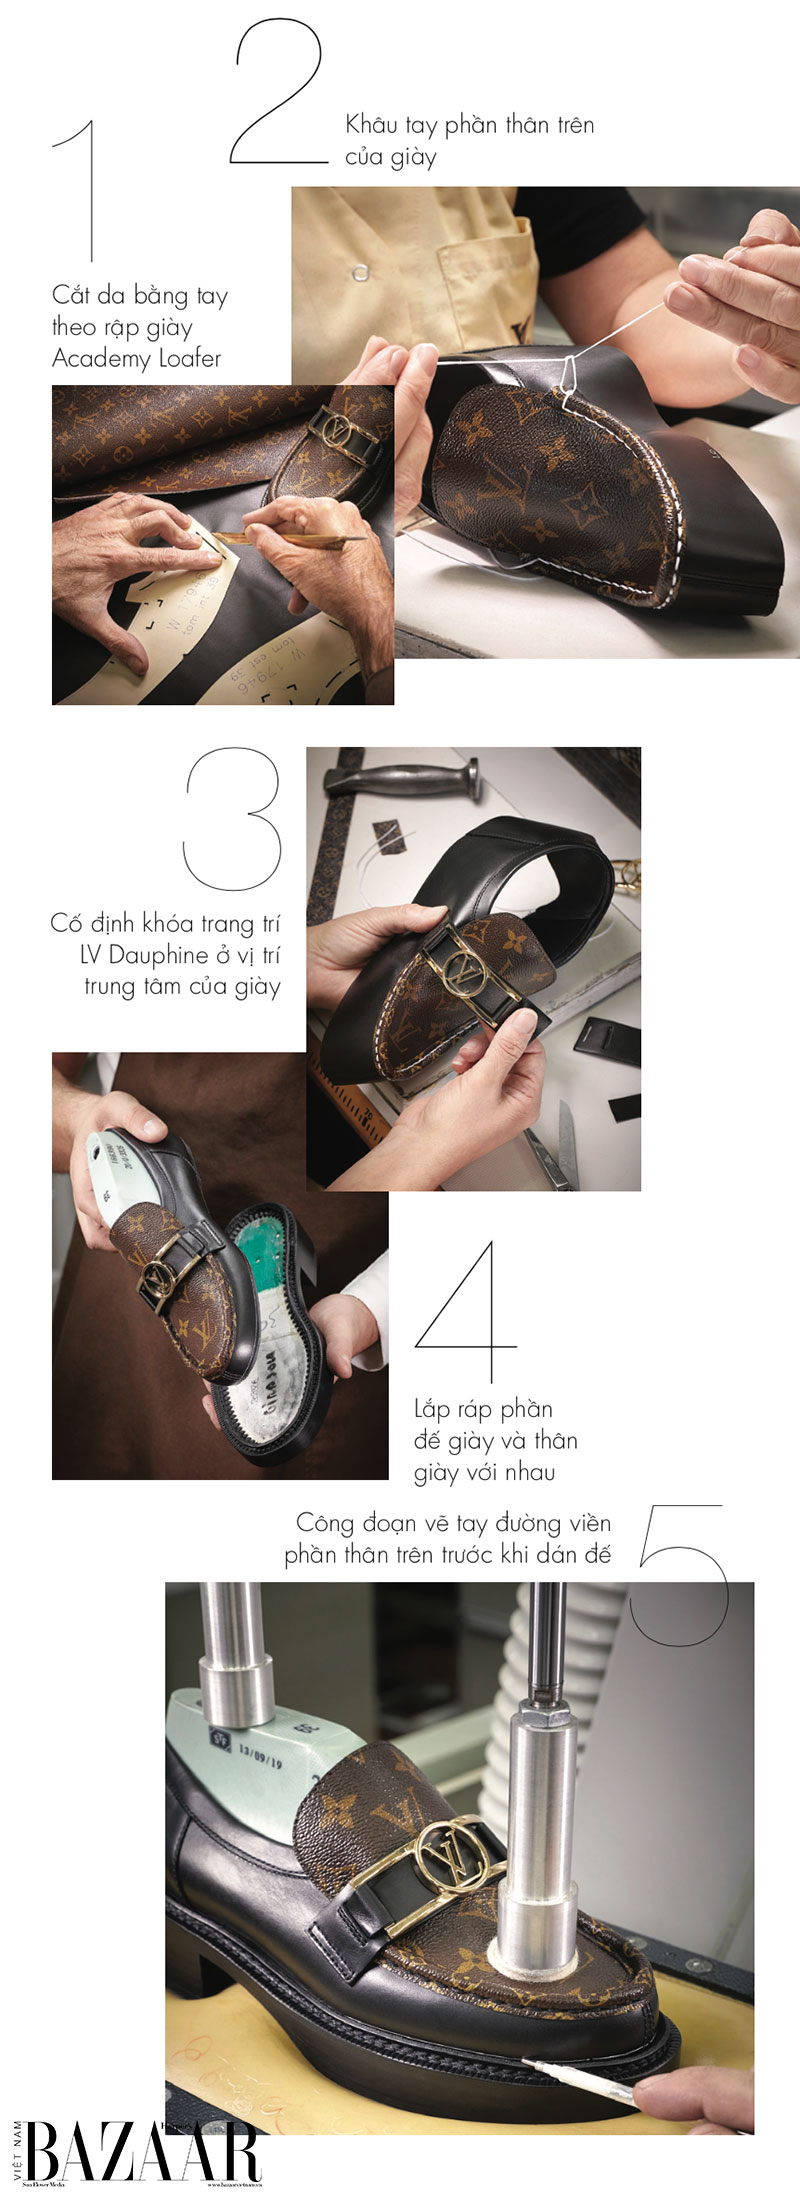 Giày Loafer Louis Vuitton là sản phẩm hot nhất hiện nay, được nhiều ngôi sao và những người yêu thời trang săn đón. Với chất liệu cao cấp, kiểu dáng đặc trưng và độ bền vô cùng ấn tượng, đôi giày này sẽ mang đến cho bạn sự tự tin và phong cách vô cùng ấn tượng. Hãy cùng chiêm ngưỡng và chọn cho mình một đôi giày loafer đẳng cấp từ Louis Vuitton.